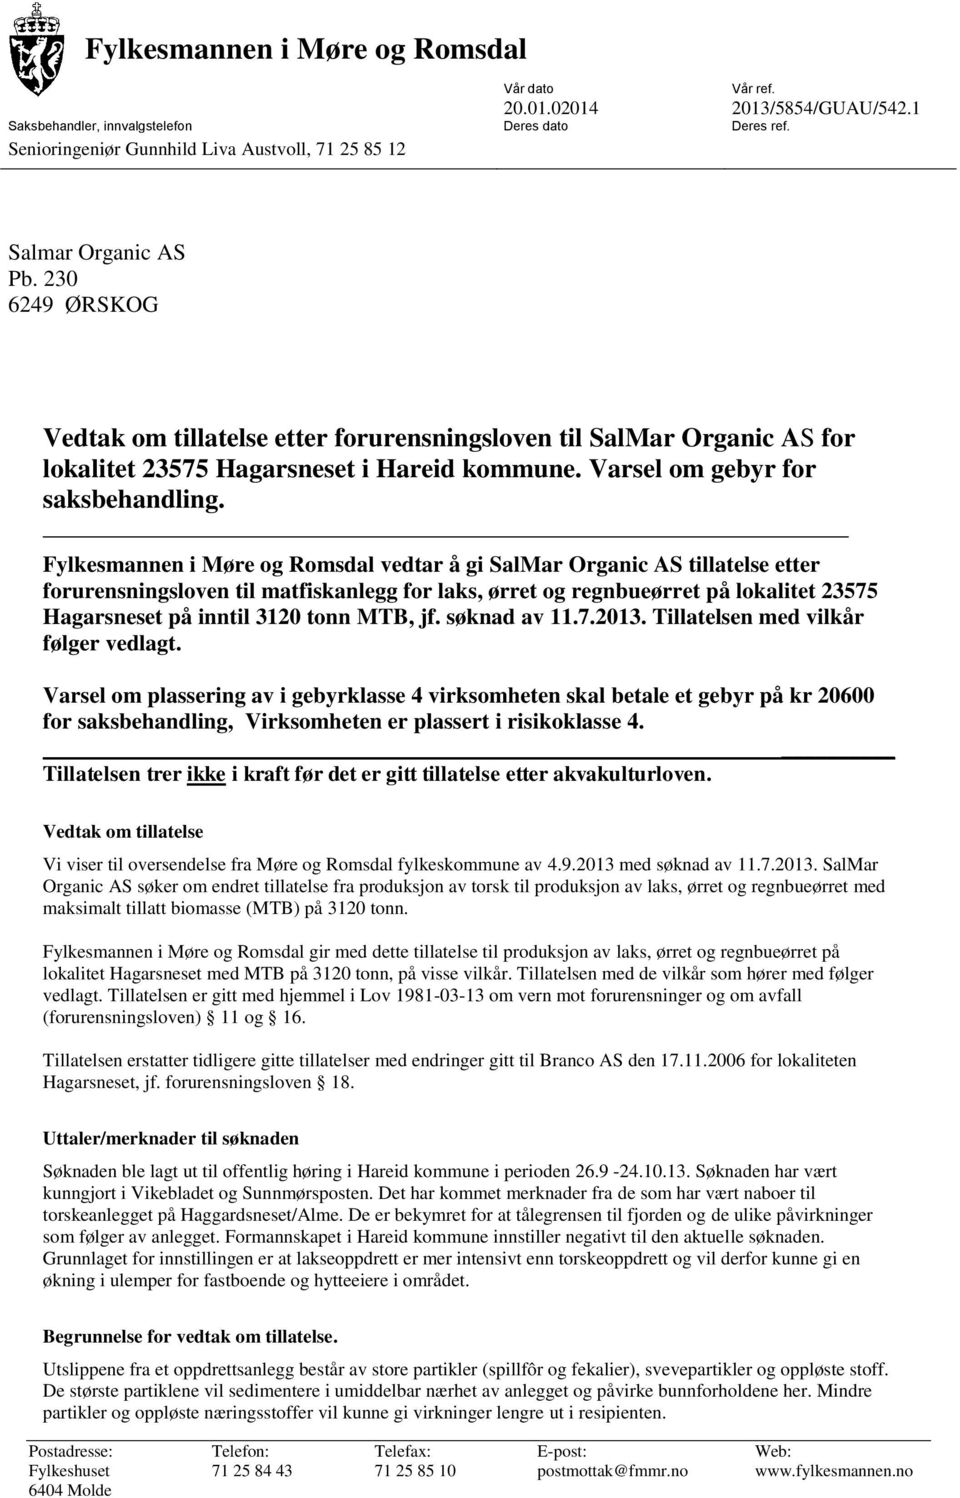 Fylkesmannen i Møre og Romsdal vedtar å gi SalMar Organic AS tillatelse etter forurensningsloven til matfiskanlegg for laks, ørret og regnbueørret på lokalitet 23575 Hagarsneset på inntil 3120 tonn